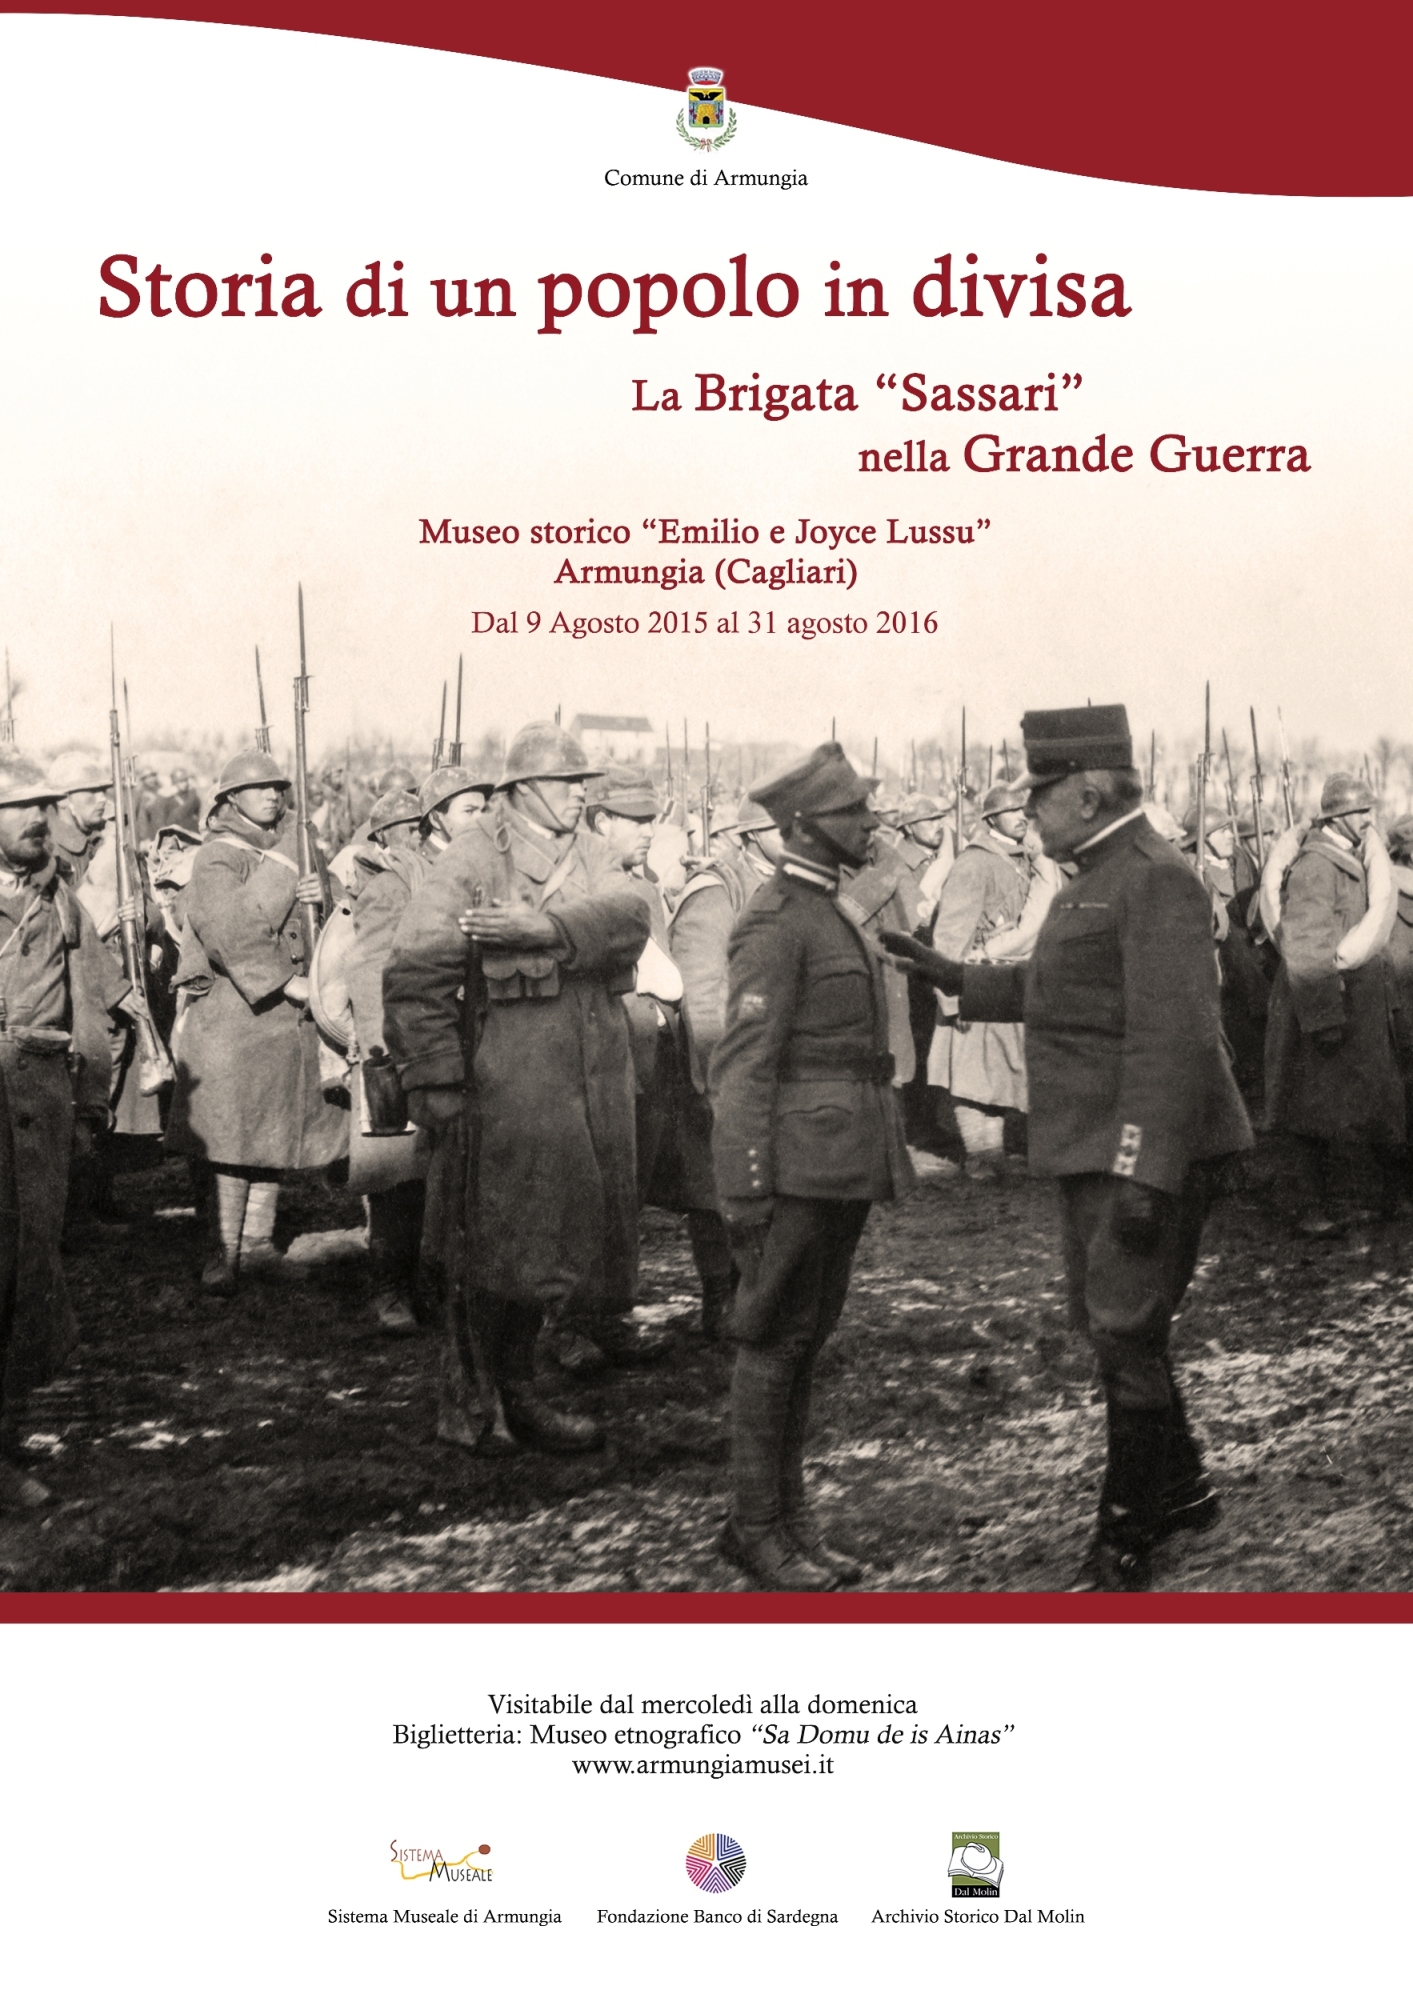 La mostra "Storia di un popolo in divisa: La Brigata Sassari nella Grande Guerra" al Museo Lussu di Armungia è stata prorogata fino al 31 Agosto 2016.